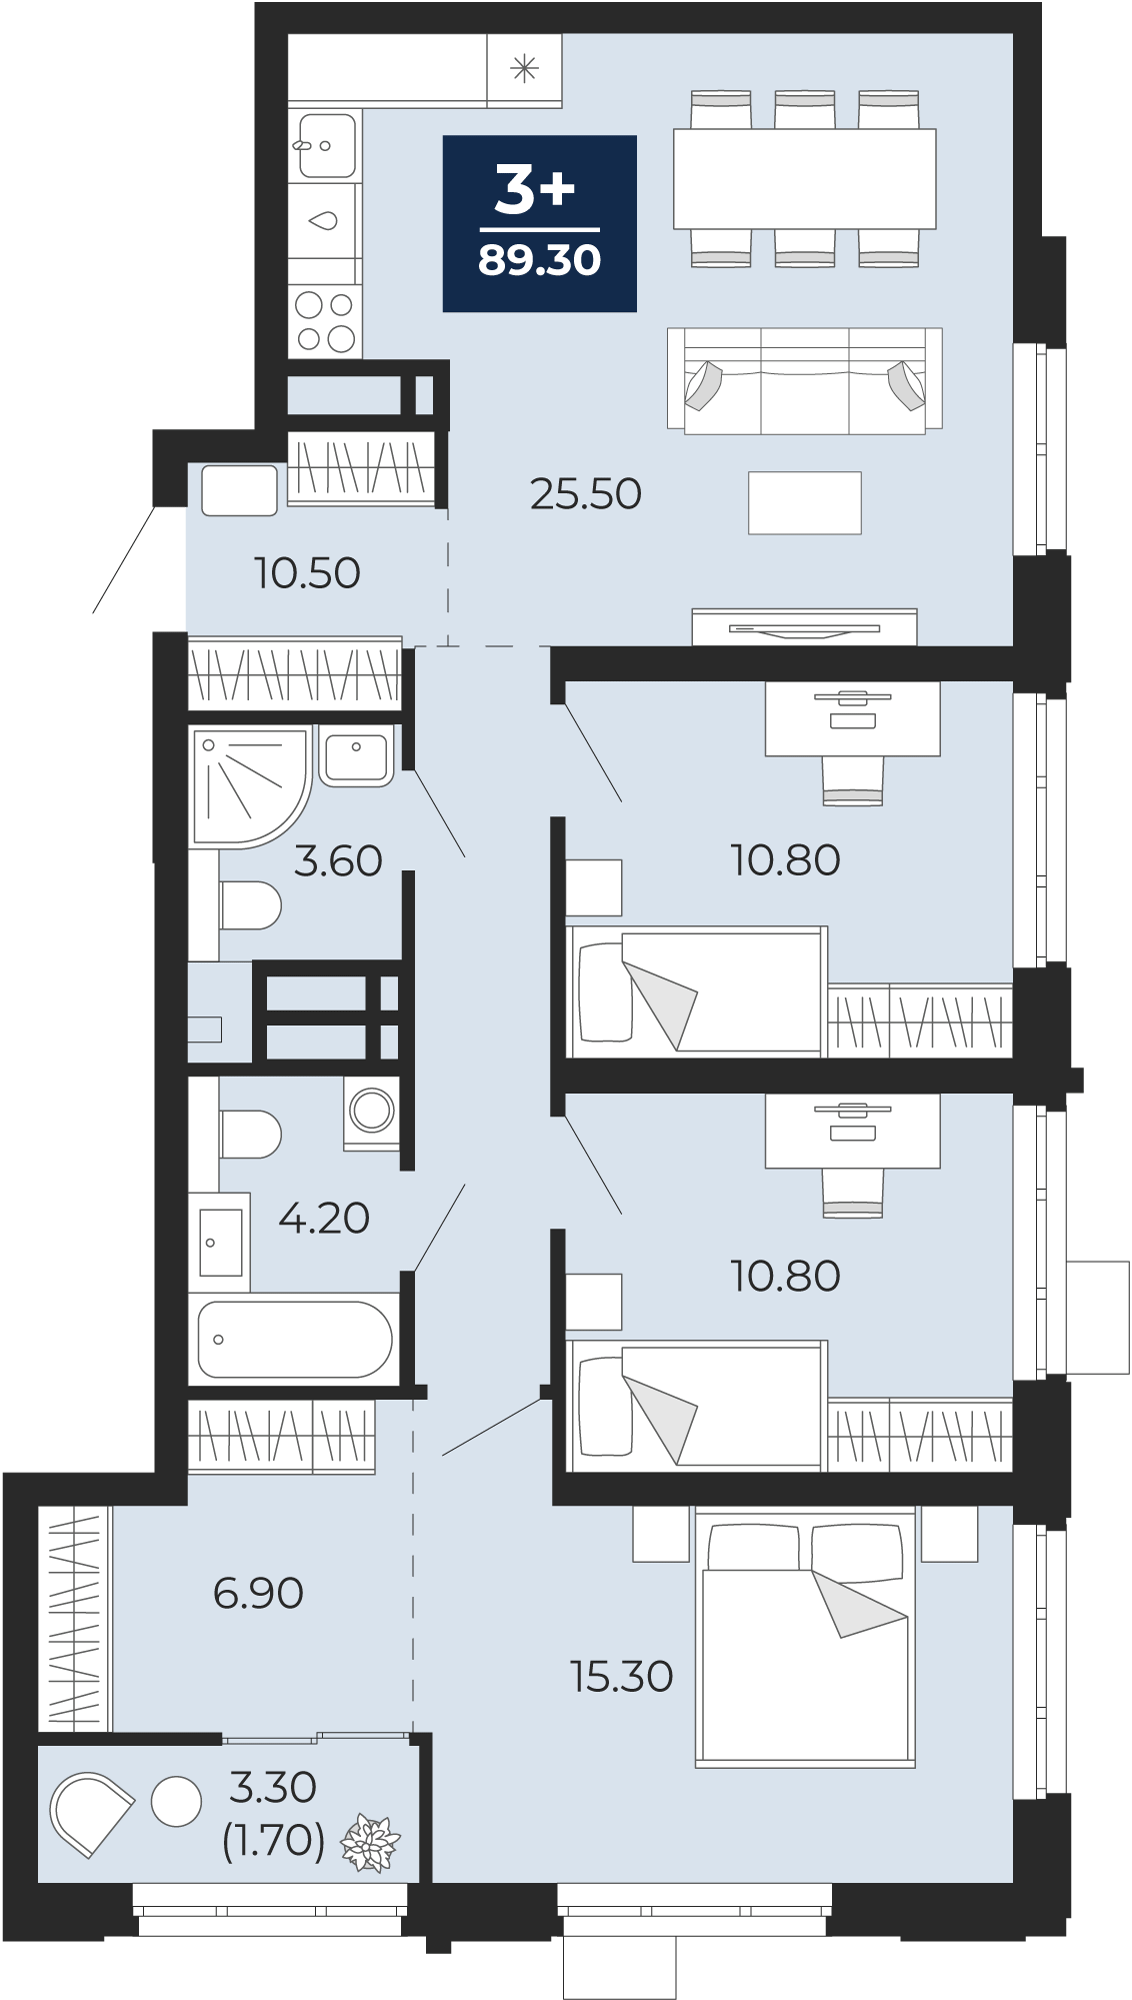 Квартира № 131, 3-комнатная, 89.3 кв. м, 7 этаж